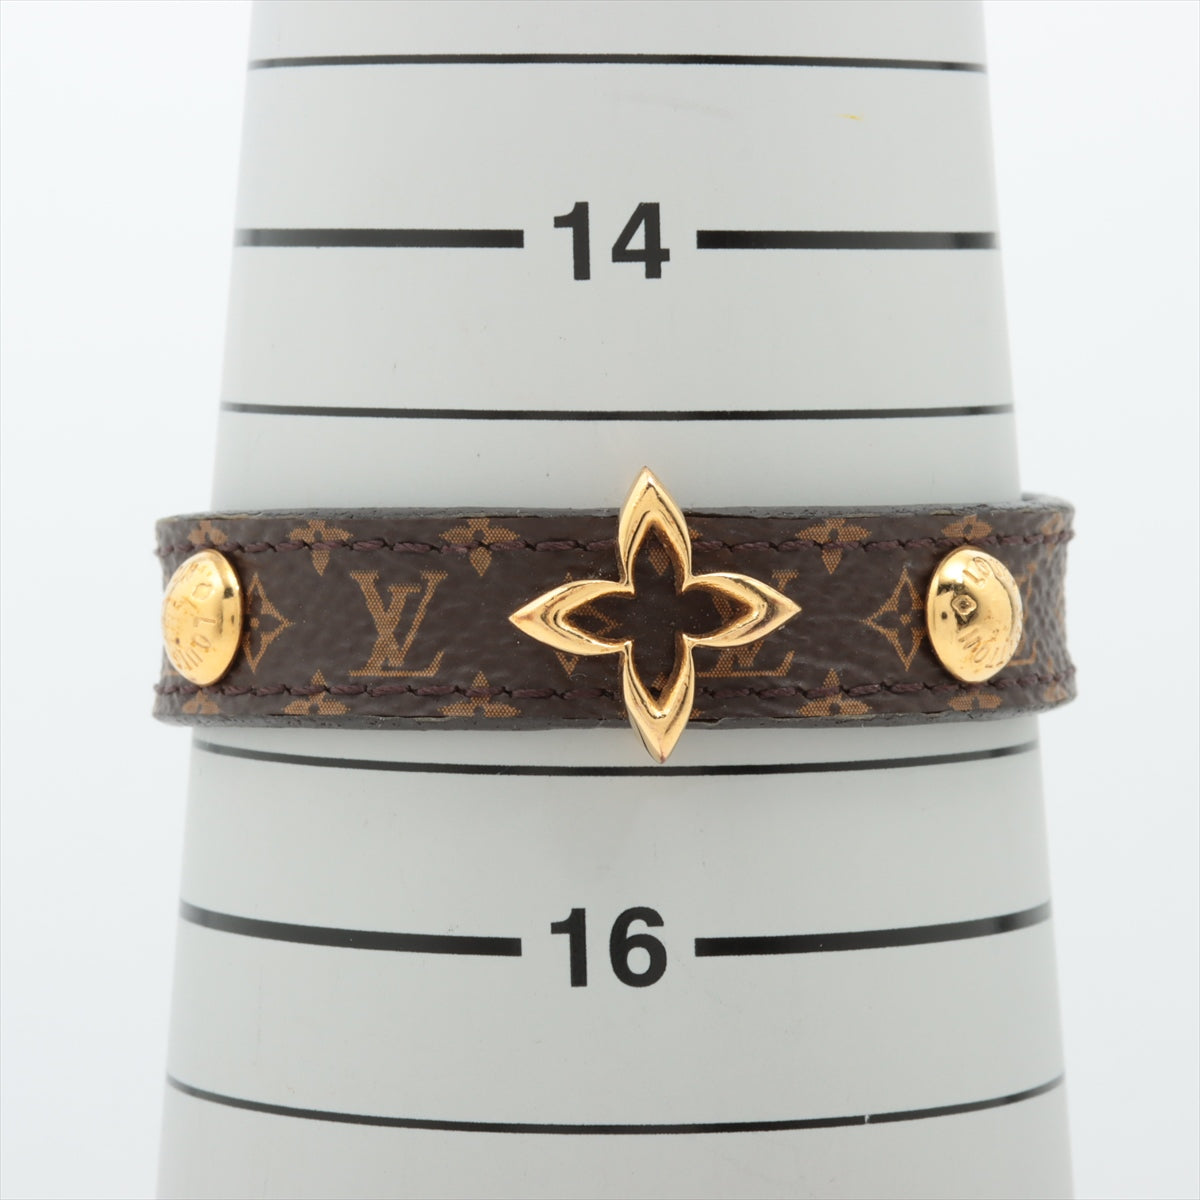 Louis Vuitton blooming monogram bracelet